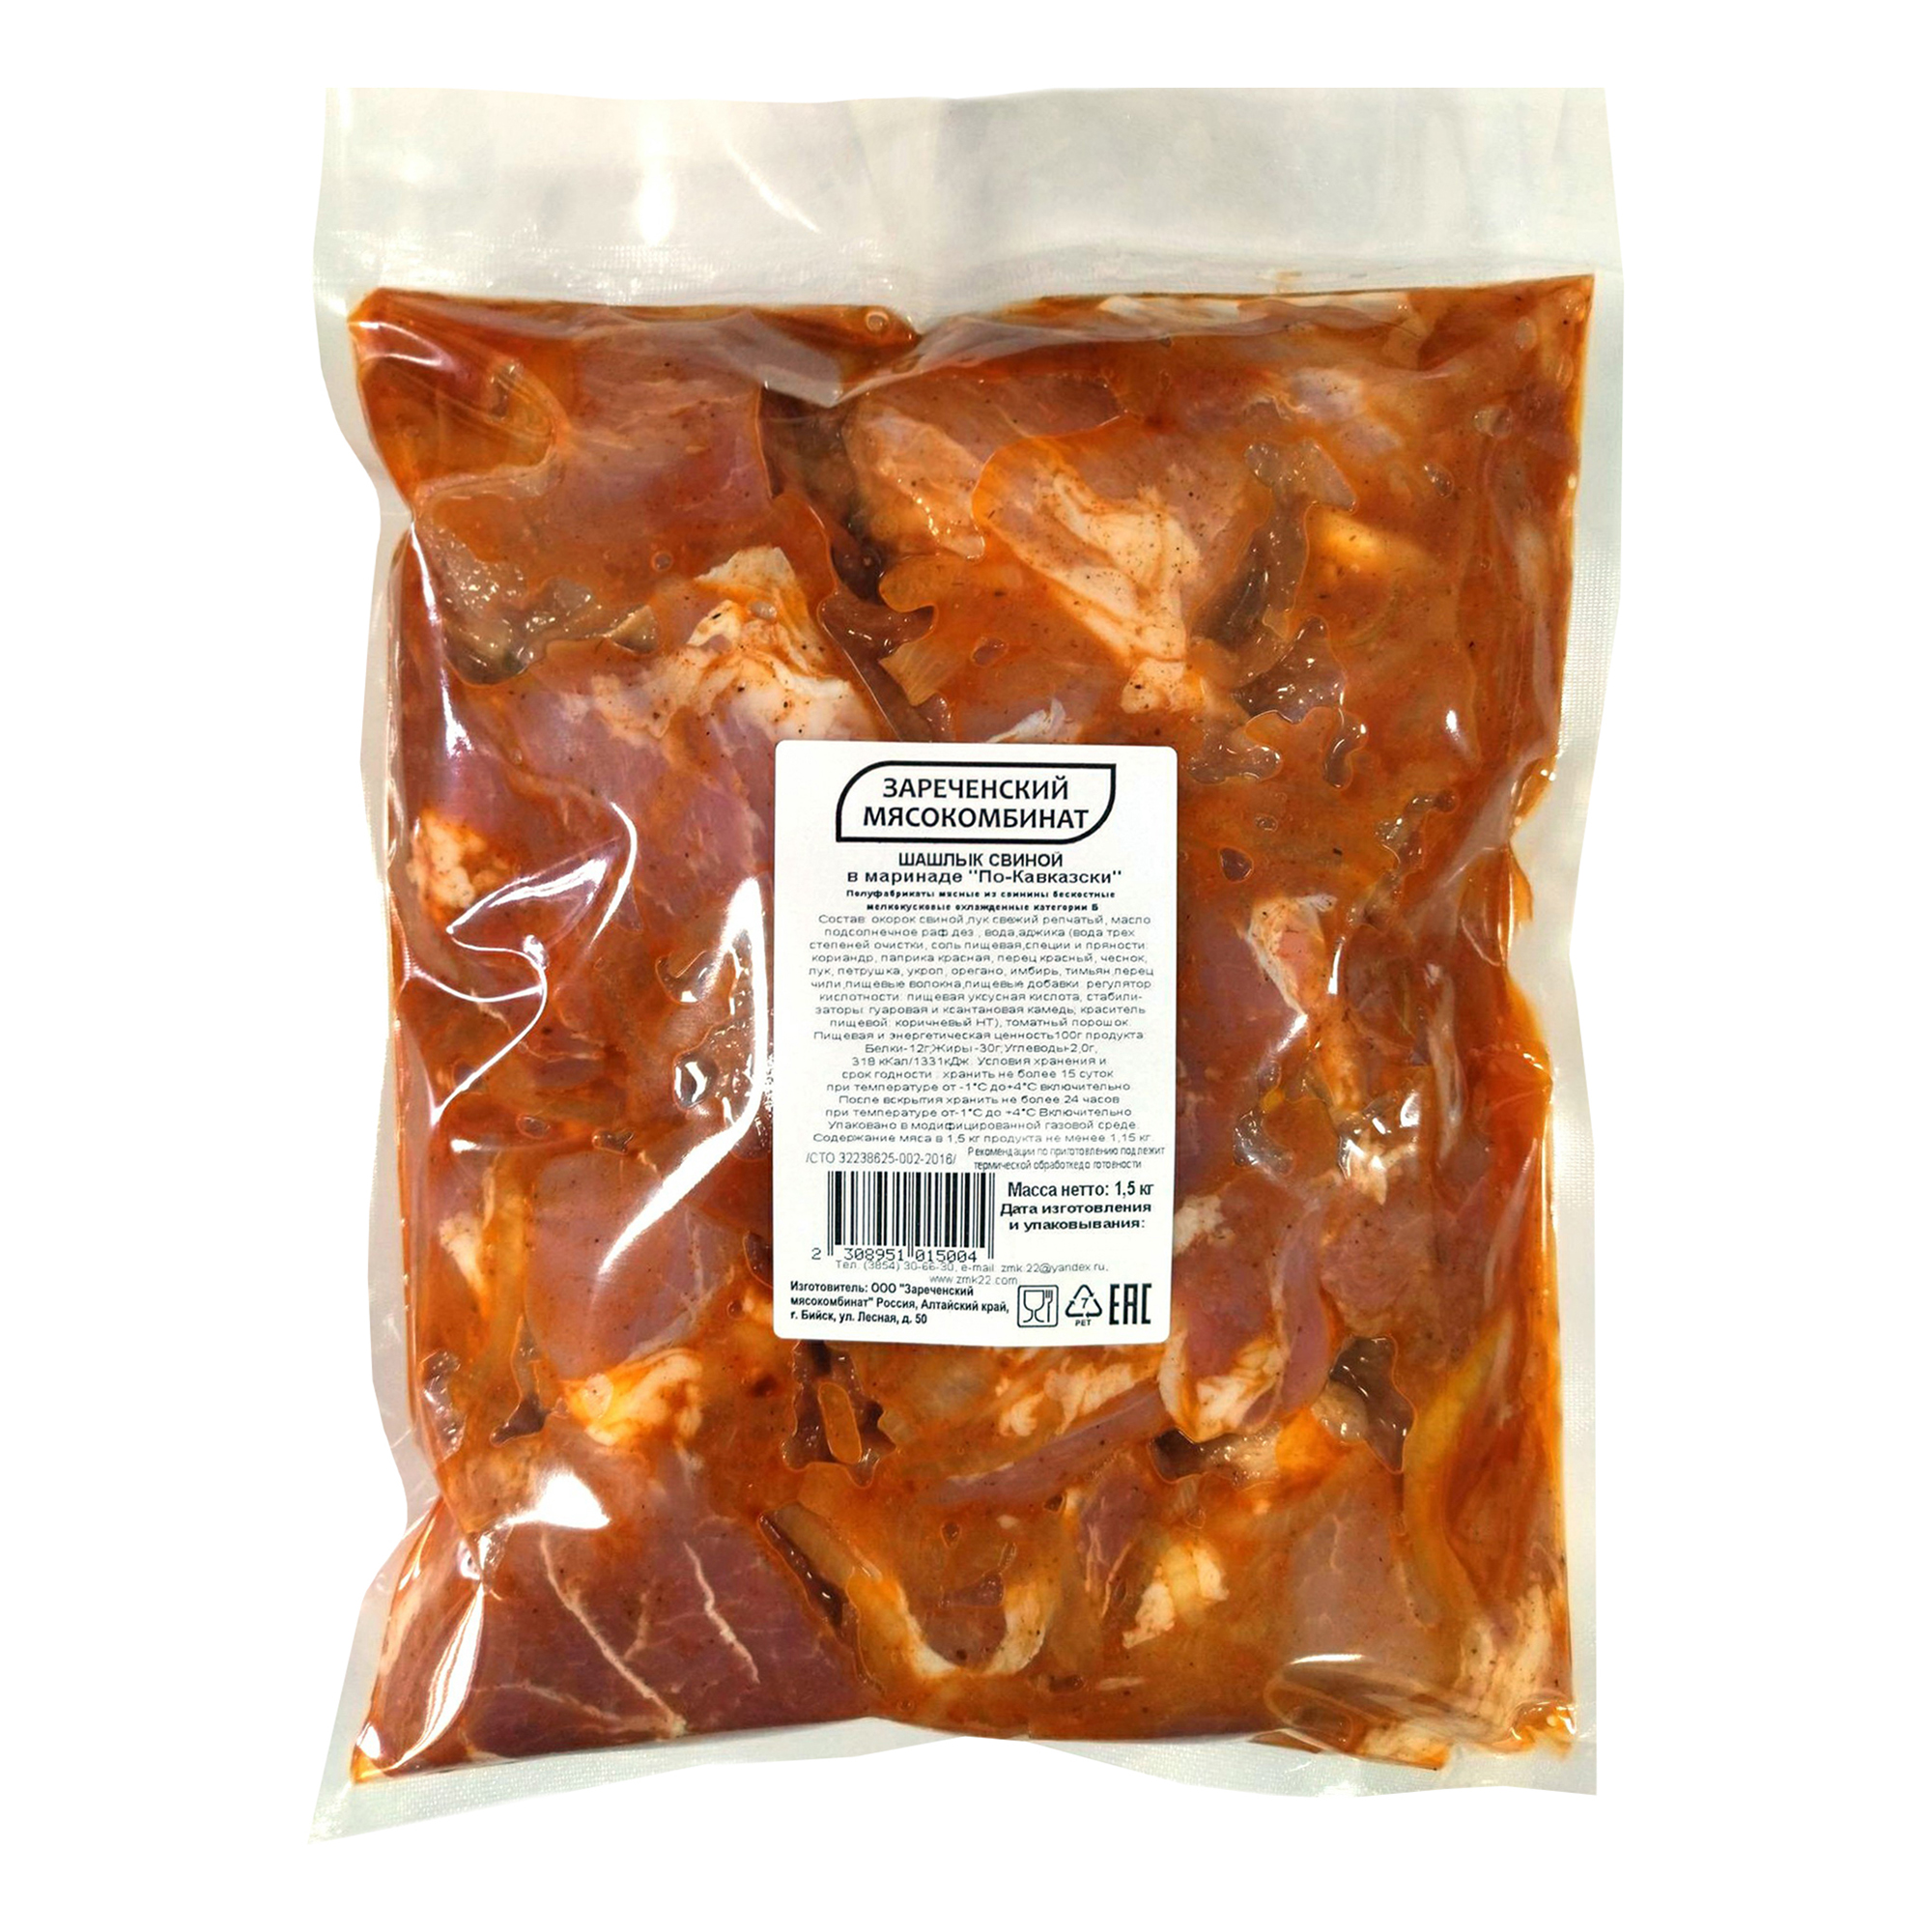 Шашлык свиной Зареченский мясокомбинат по-кавказски охлажденный +-1,5 кг